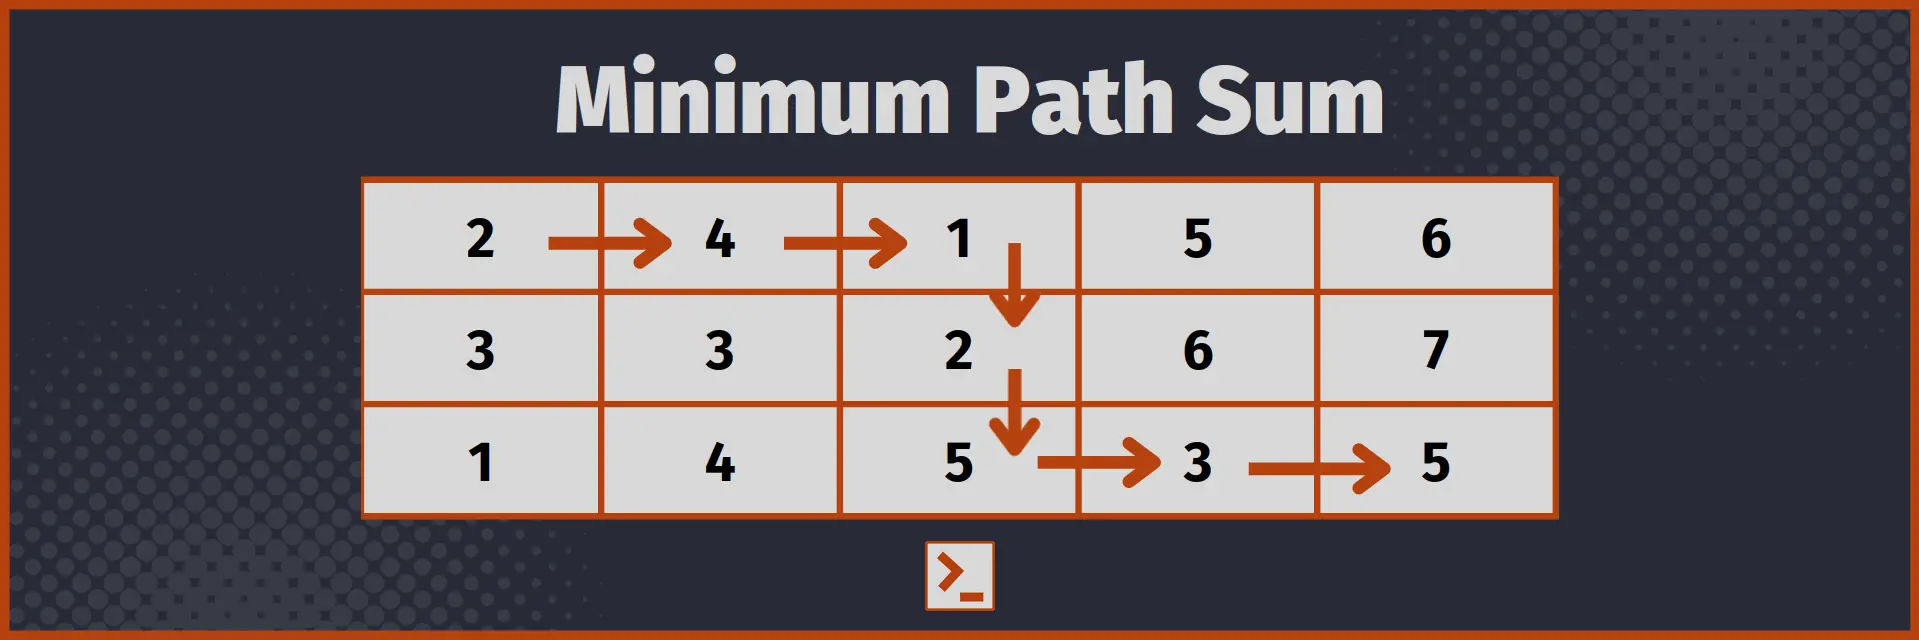 Minimum Path Sum Grid